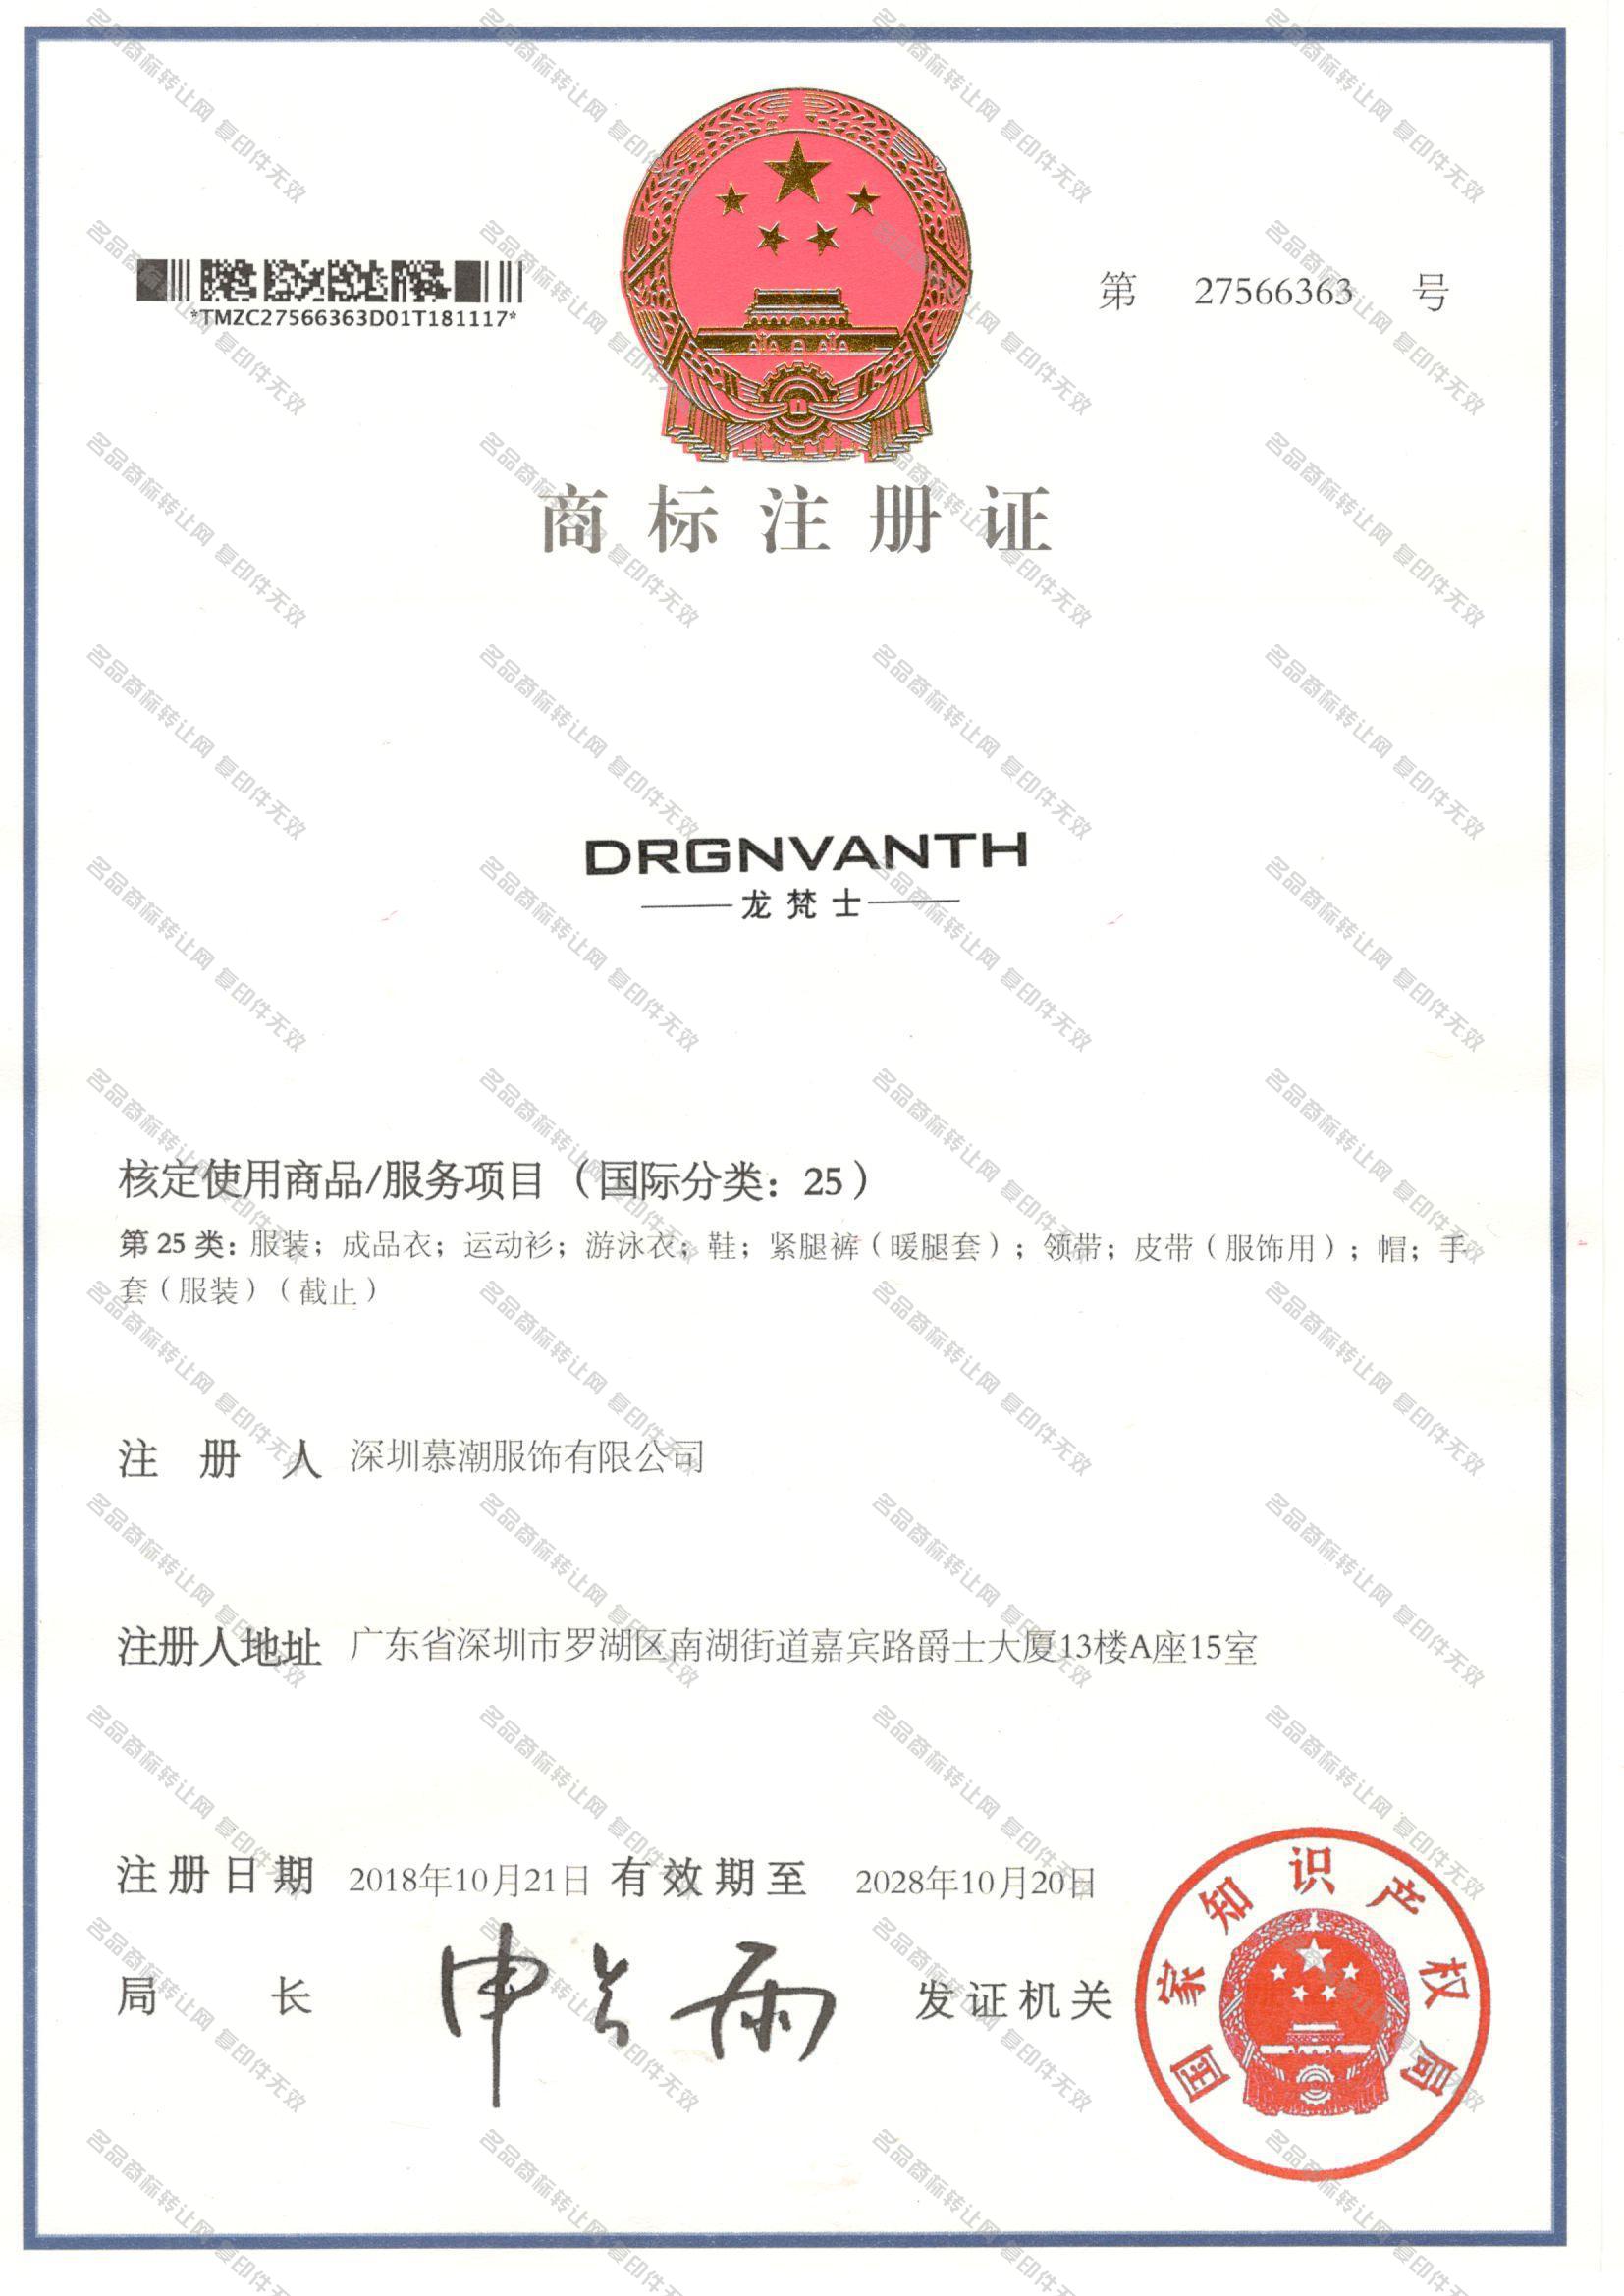 龙梵士 DRGNVANTH注册证